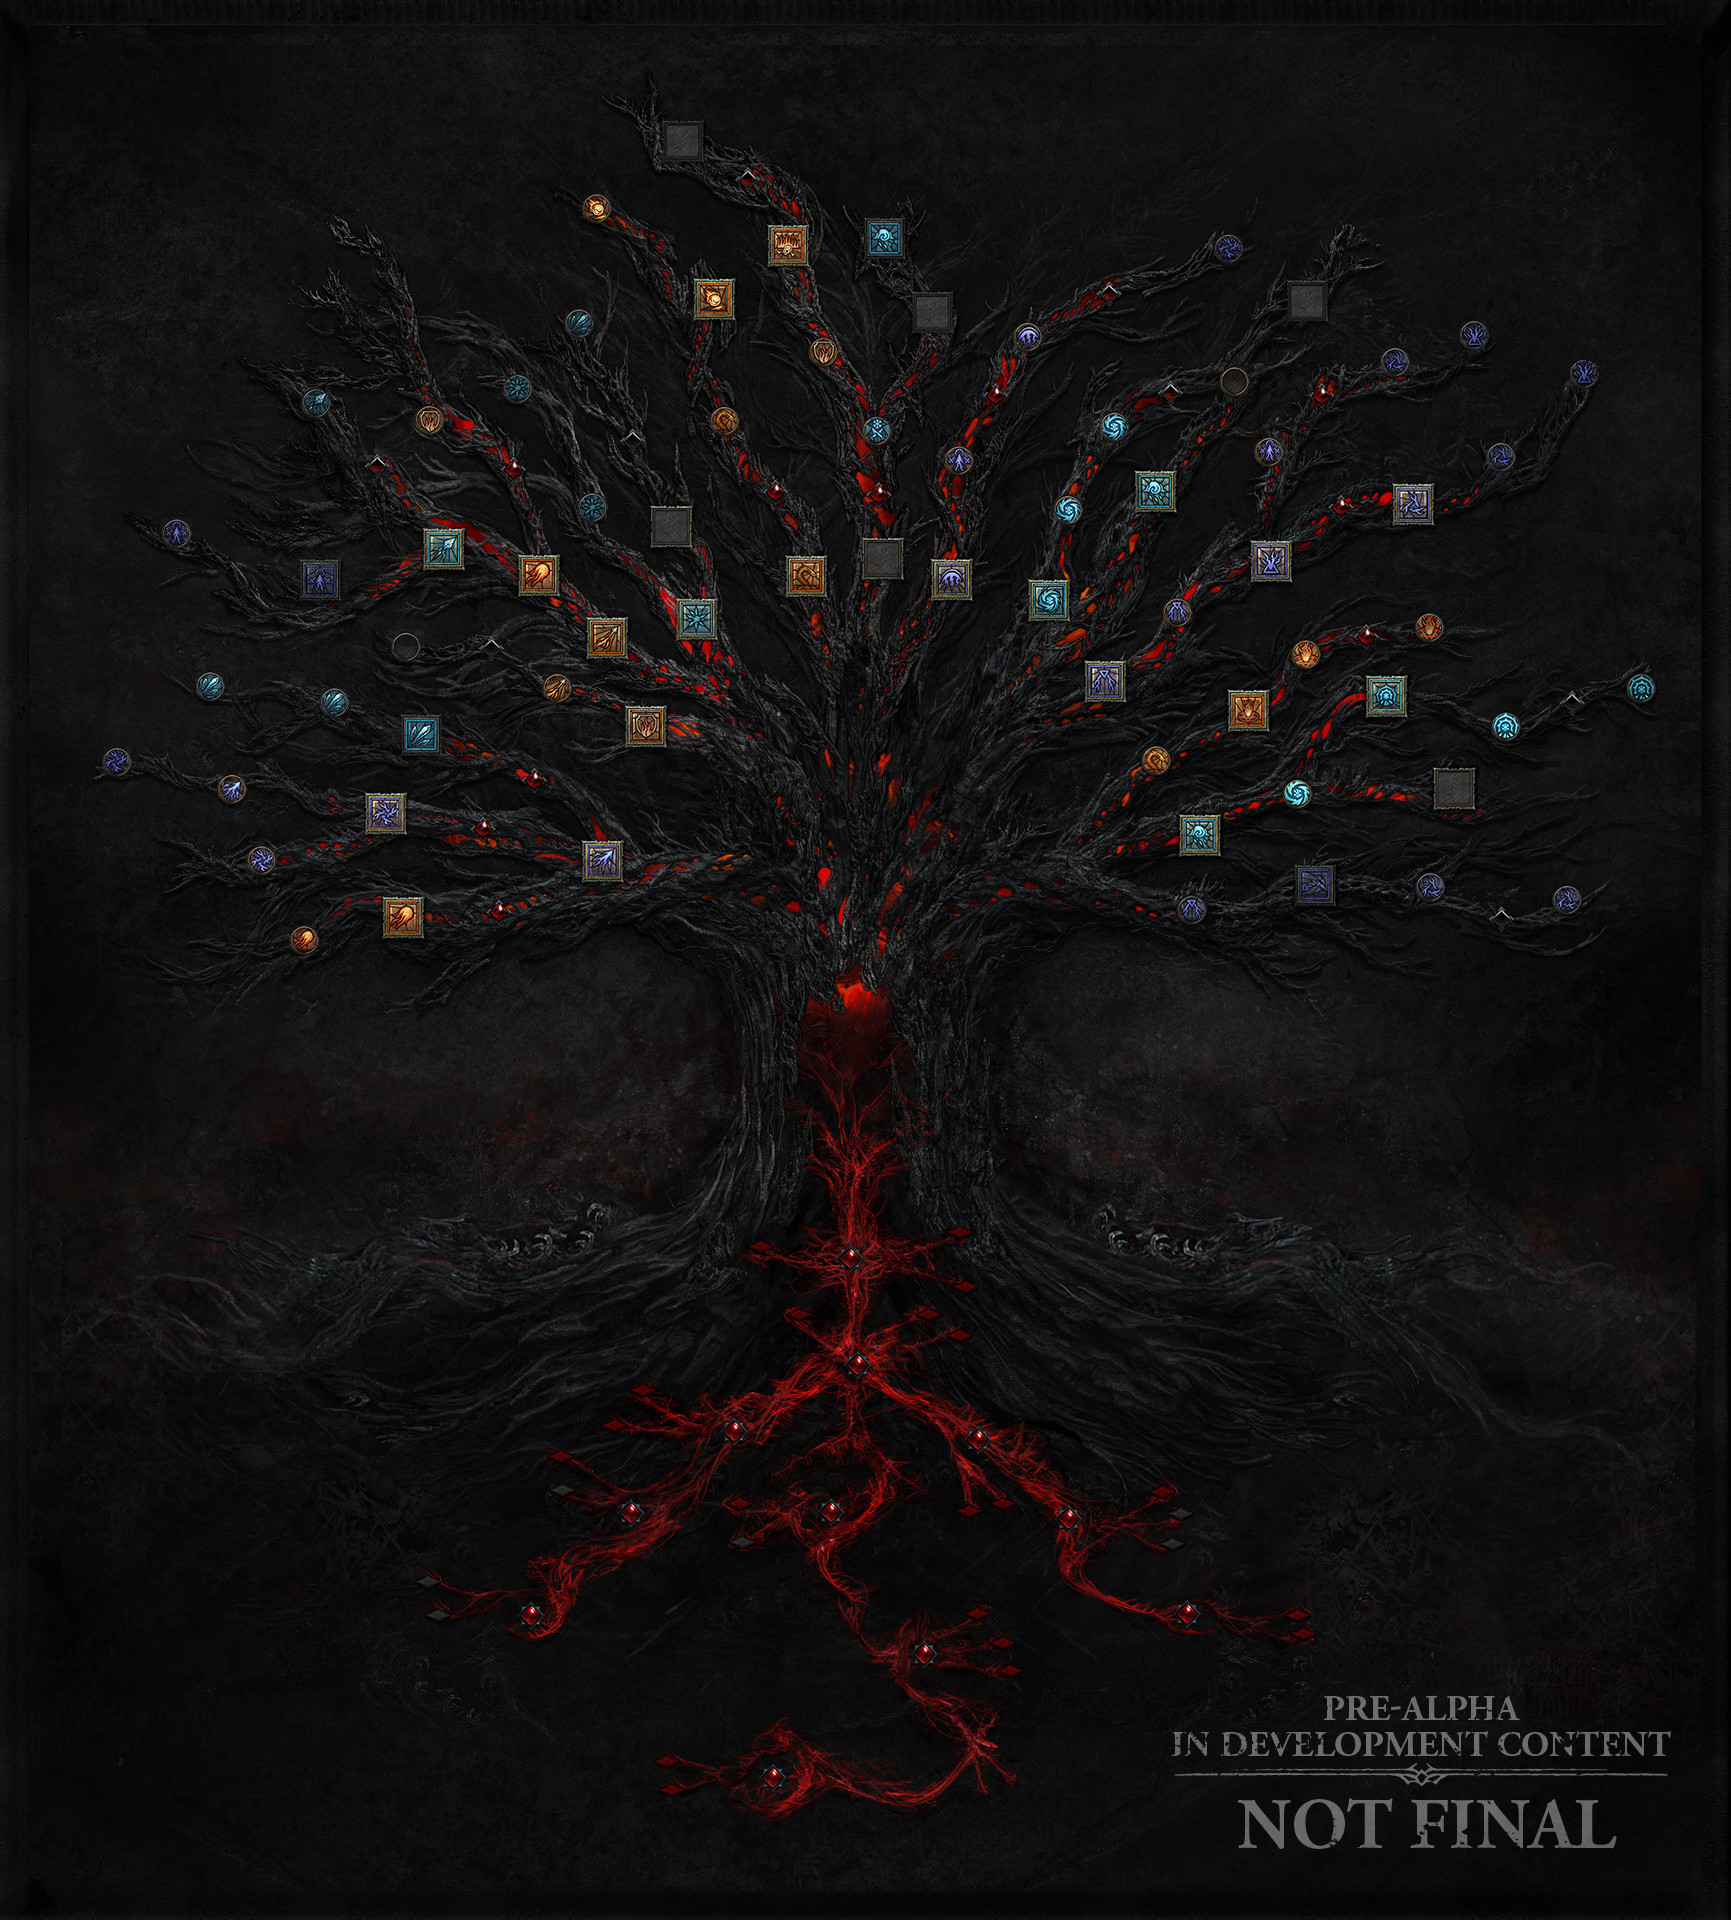 Новое древо умений, предметы, эндгейм — свежие подробности Diablo IV - фото 1